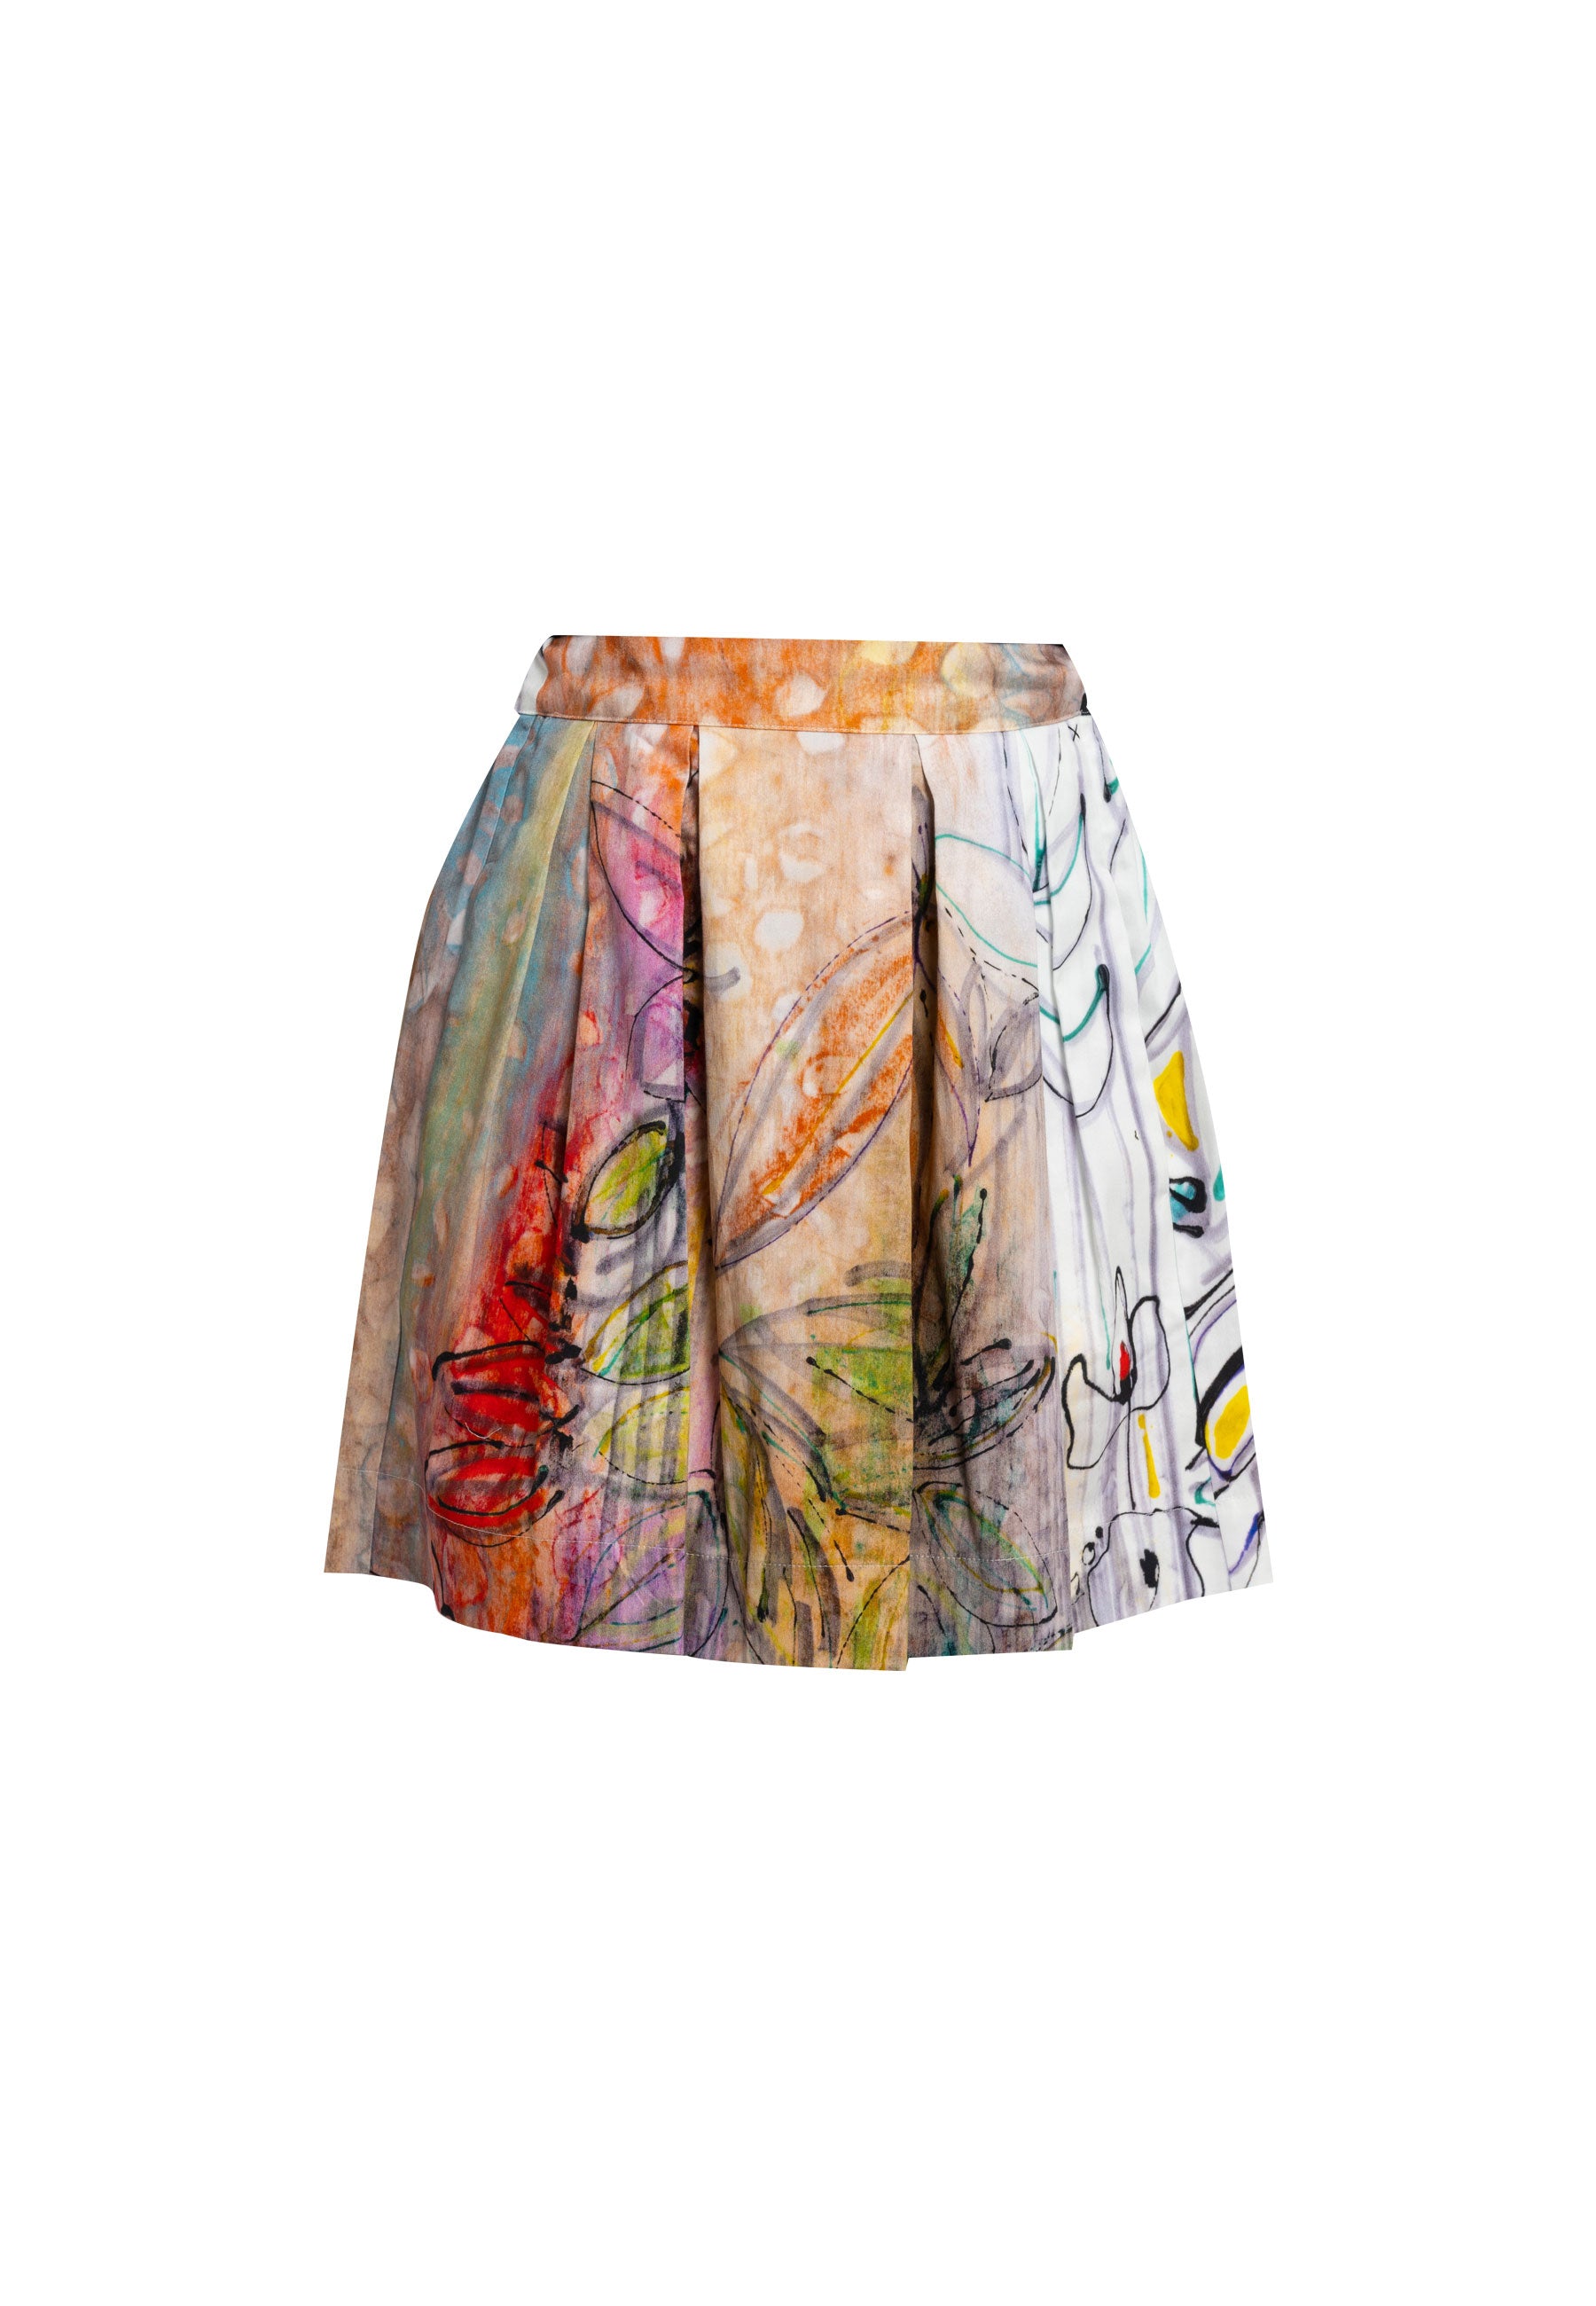 Alice Floral Mini Skirt, mini skirt,minni skirt for women, australia skirt midi skirt, high waisted skirt, best selling skirts, summer dresses, black skirtfloral skirt, summer skirt, eco-friendly skirt, high-waisted skirt, Italian skirt, mini skirt 